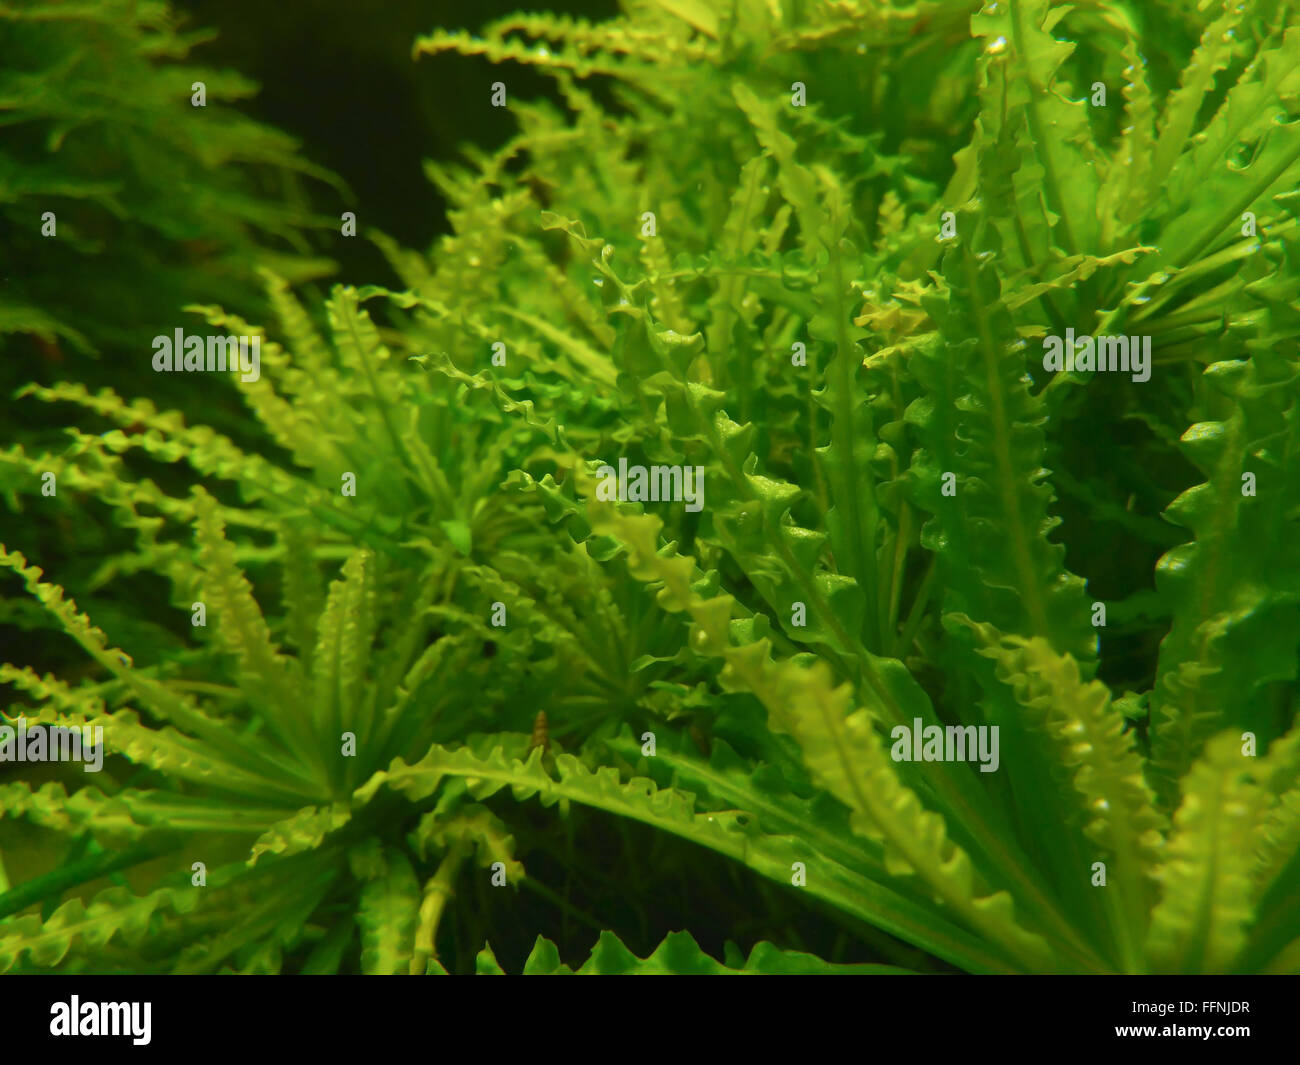 Acquario subacqueo flora dettagli con luce artificiale Foto Stock